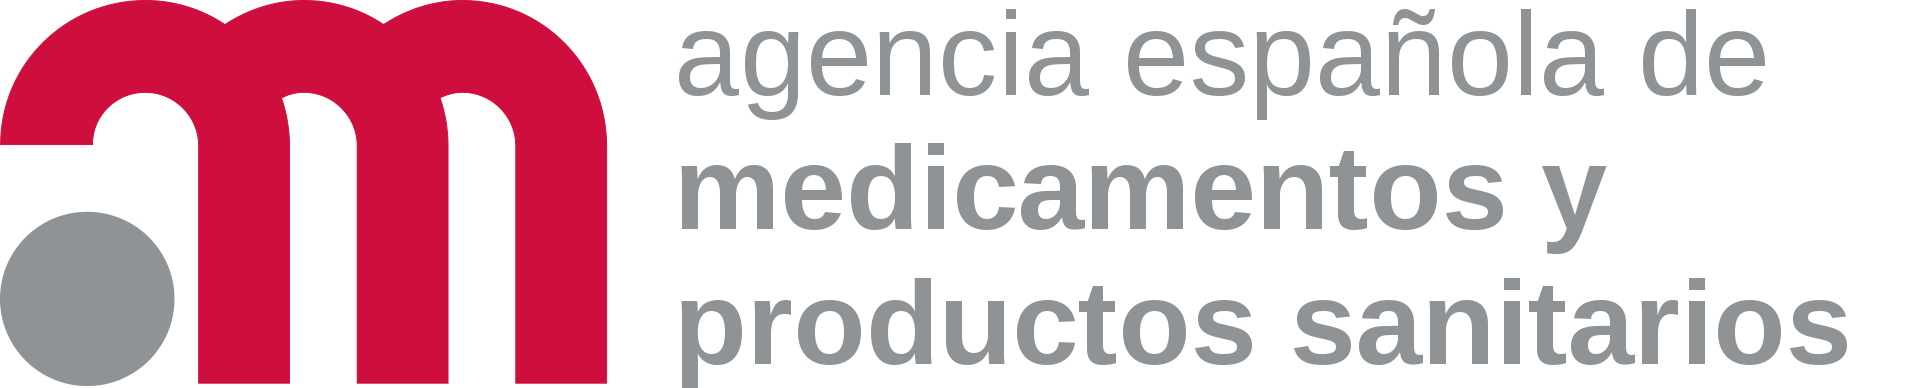 agencia-espanola-medicamentos